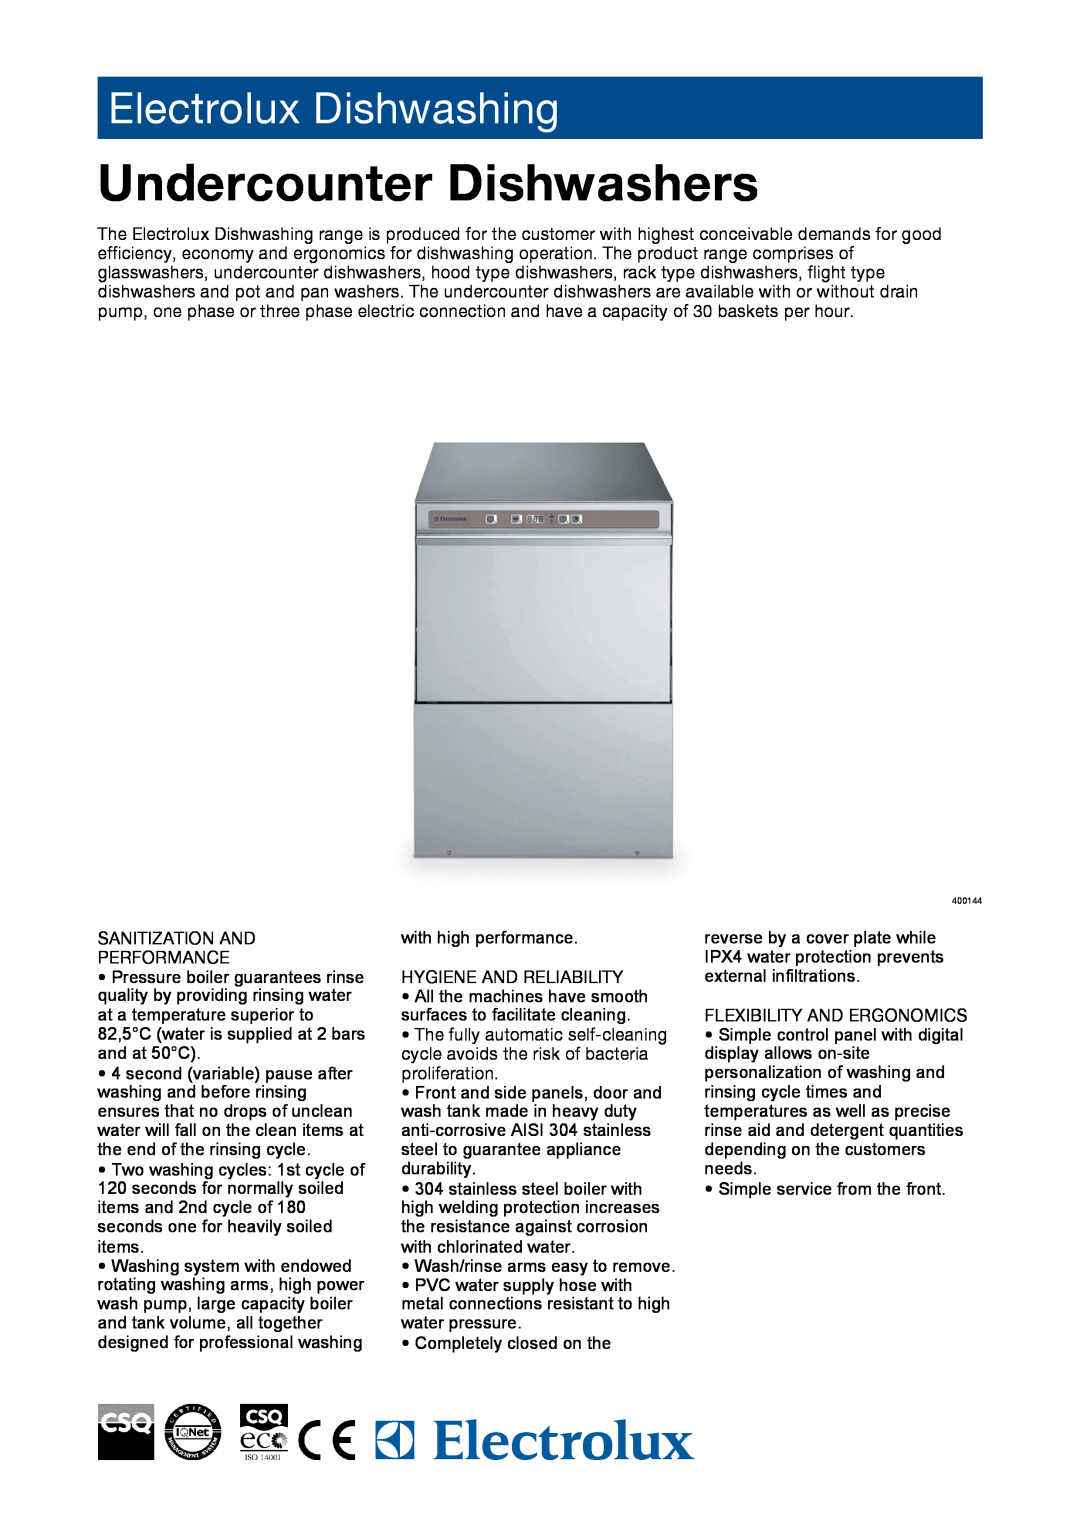 Electrolux 400144 manual Undercounter Dishwashers, Electrolux Dishwashing 